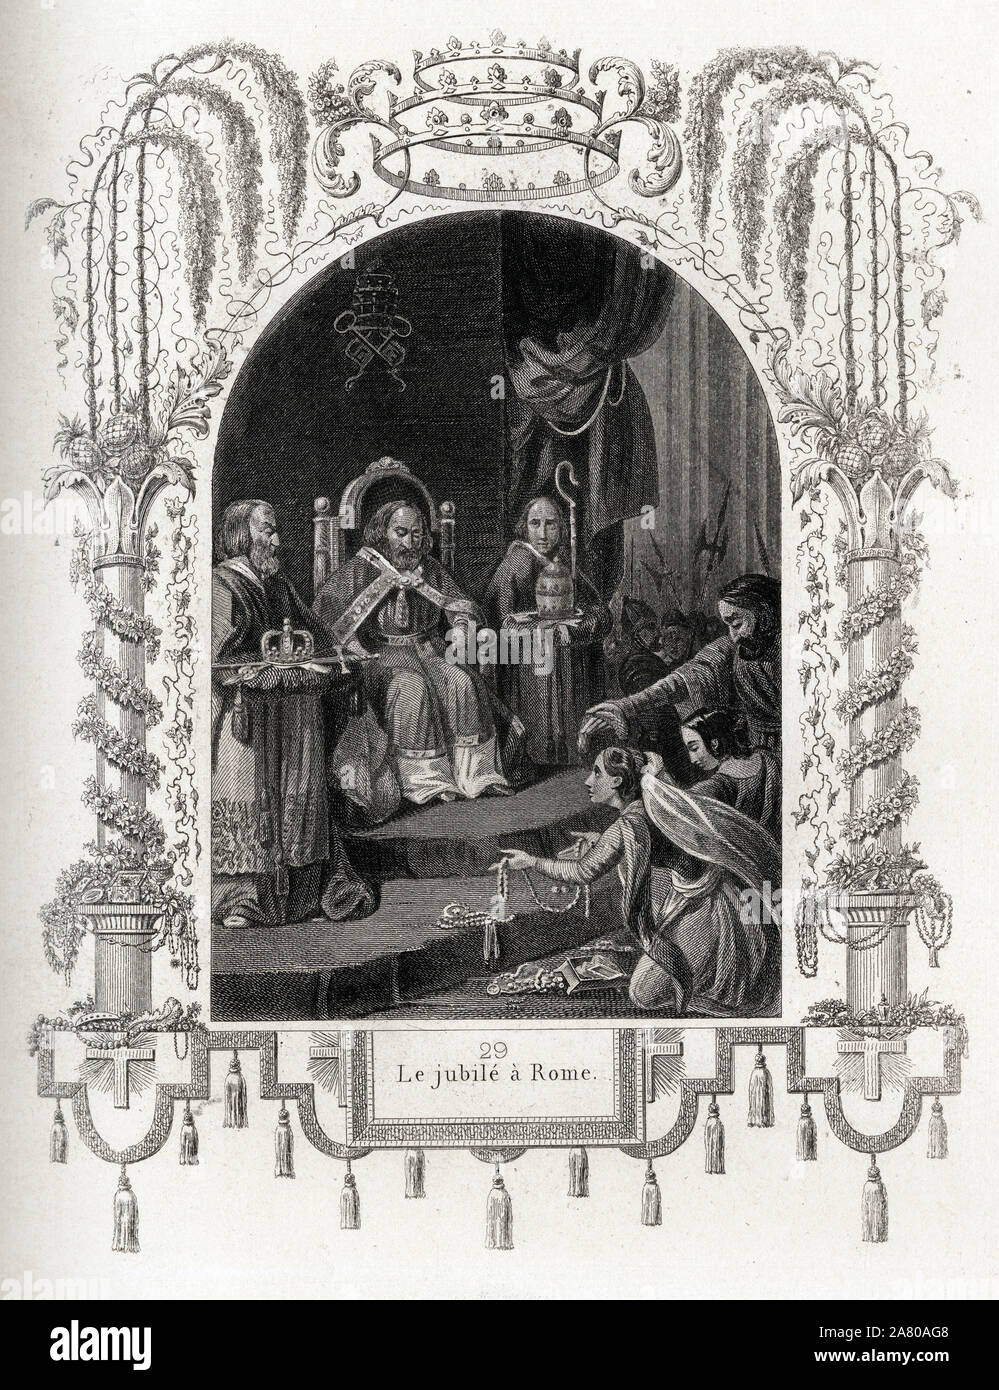 Le jubile a Rome en 1450, pendant le pontificat de Nicolas V (1447-1455).  Gravure pour illustrer Histoire des papes par Maurice Lachatre (1814-1900), Stock Photo